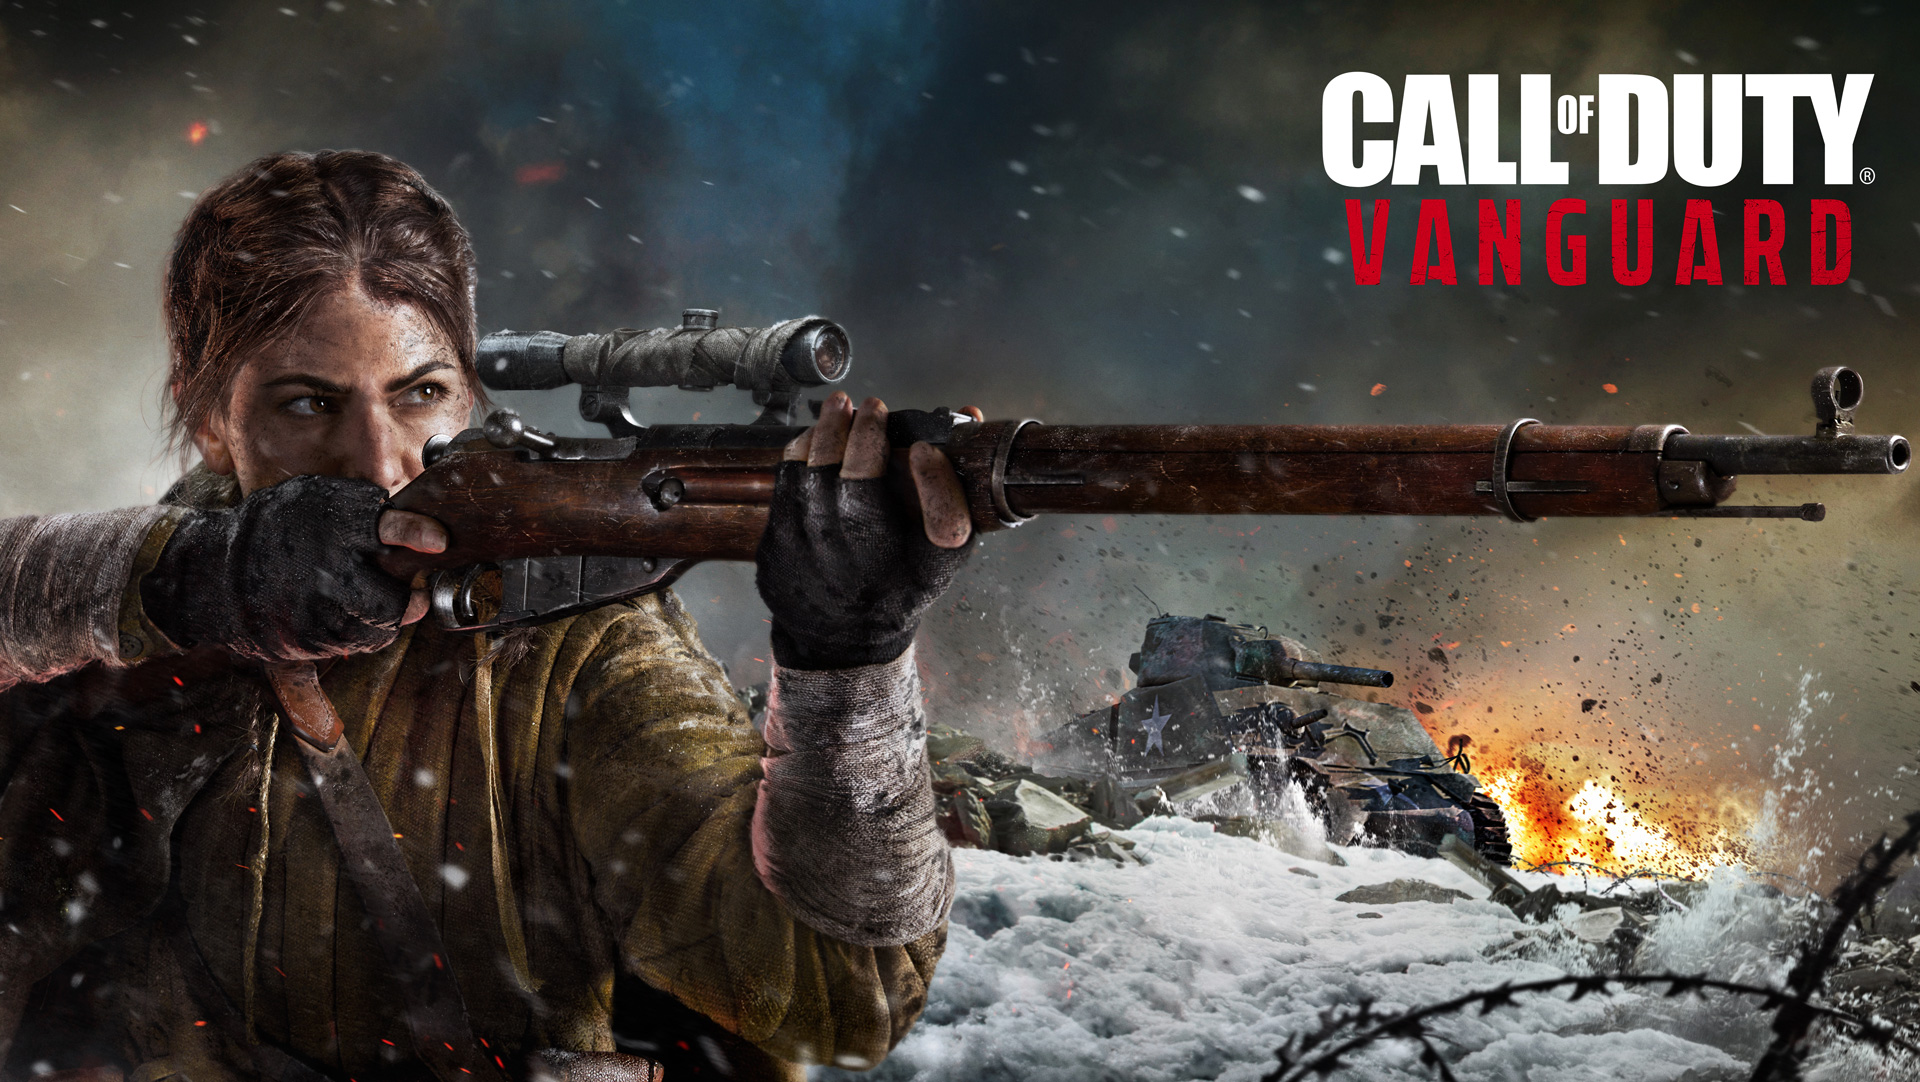 A DAMA DA MORTE! - Campanha Call of Duty Vanguard em 4K! #04 